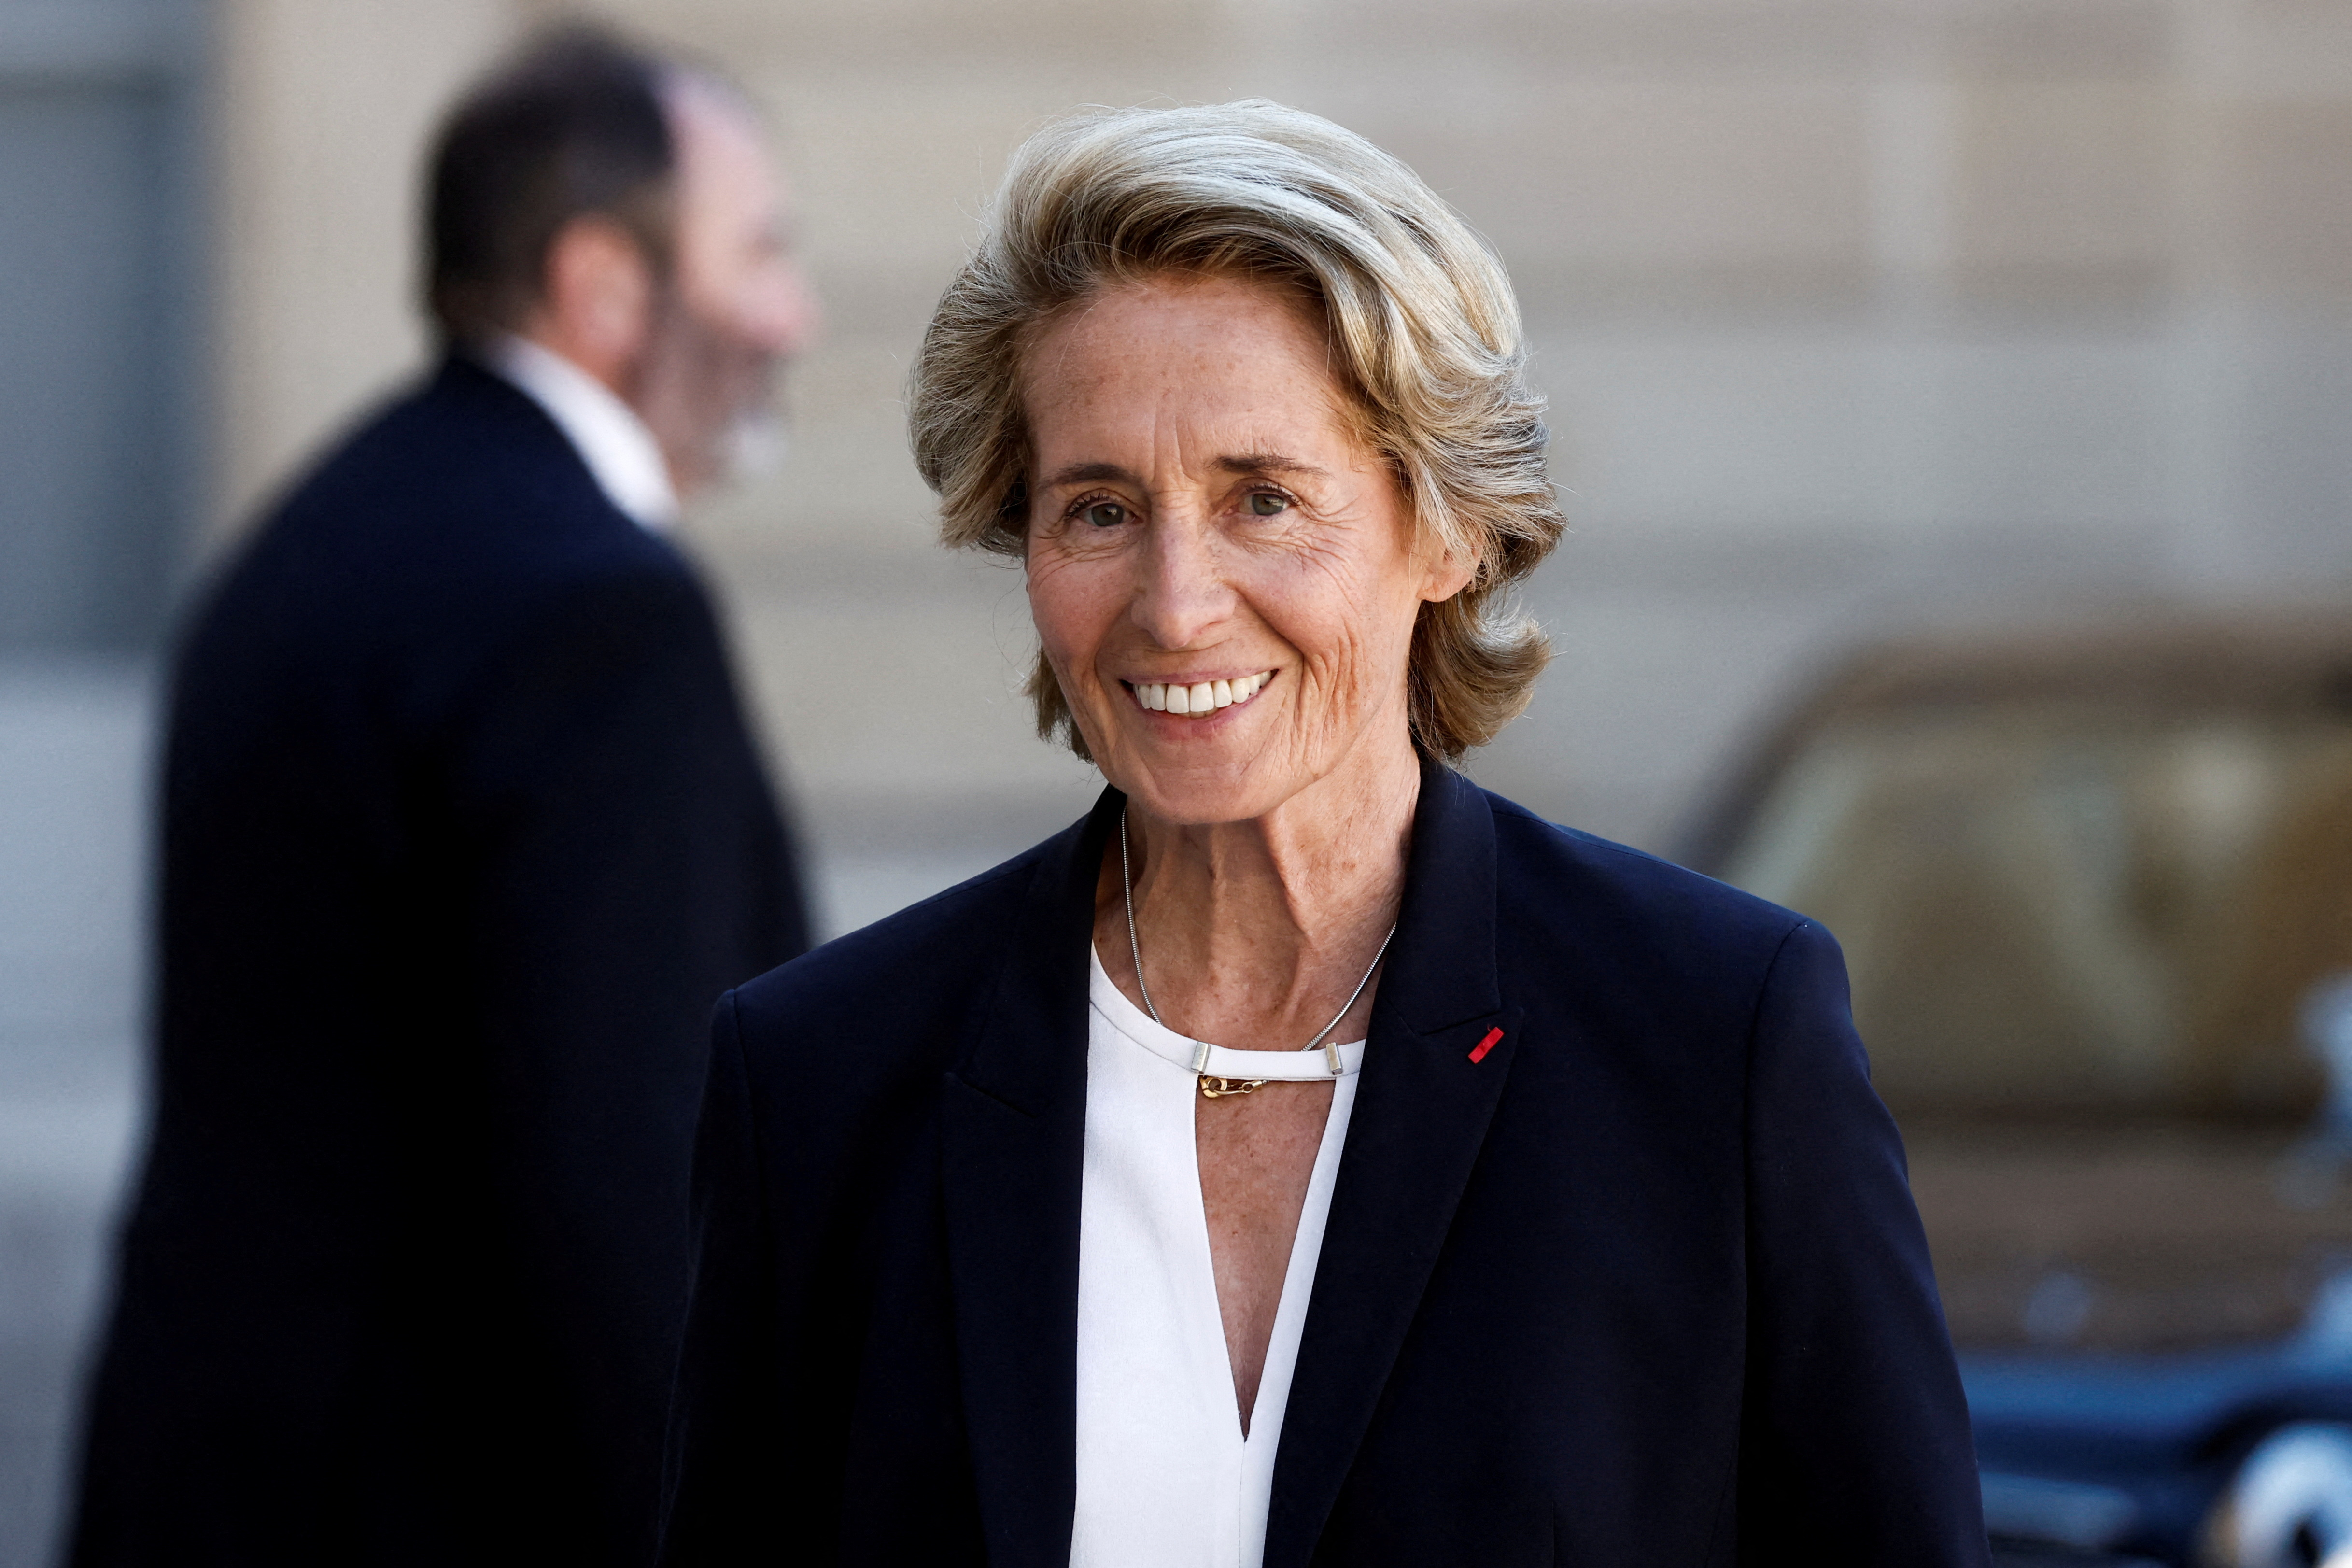 La ministre des Collectivités territoriales Caroline Cayeux démissionne pour cause de déclaration de patrimoine « sous-évaluée »